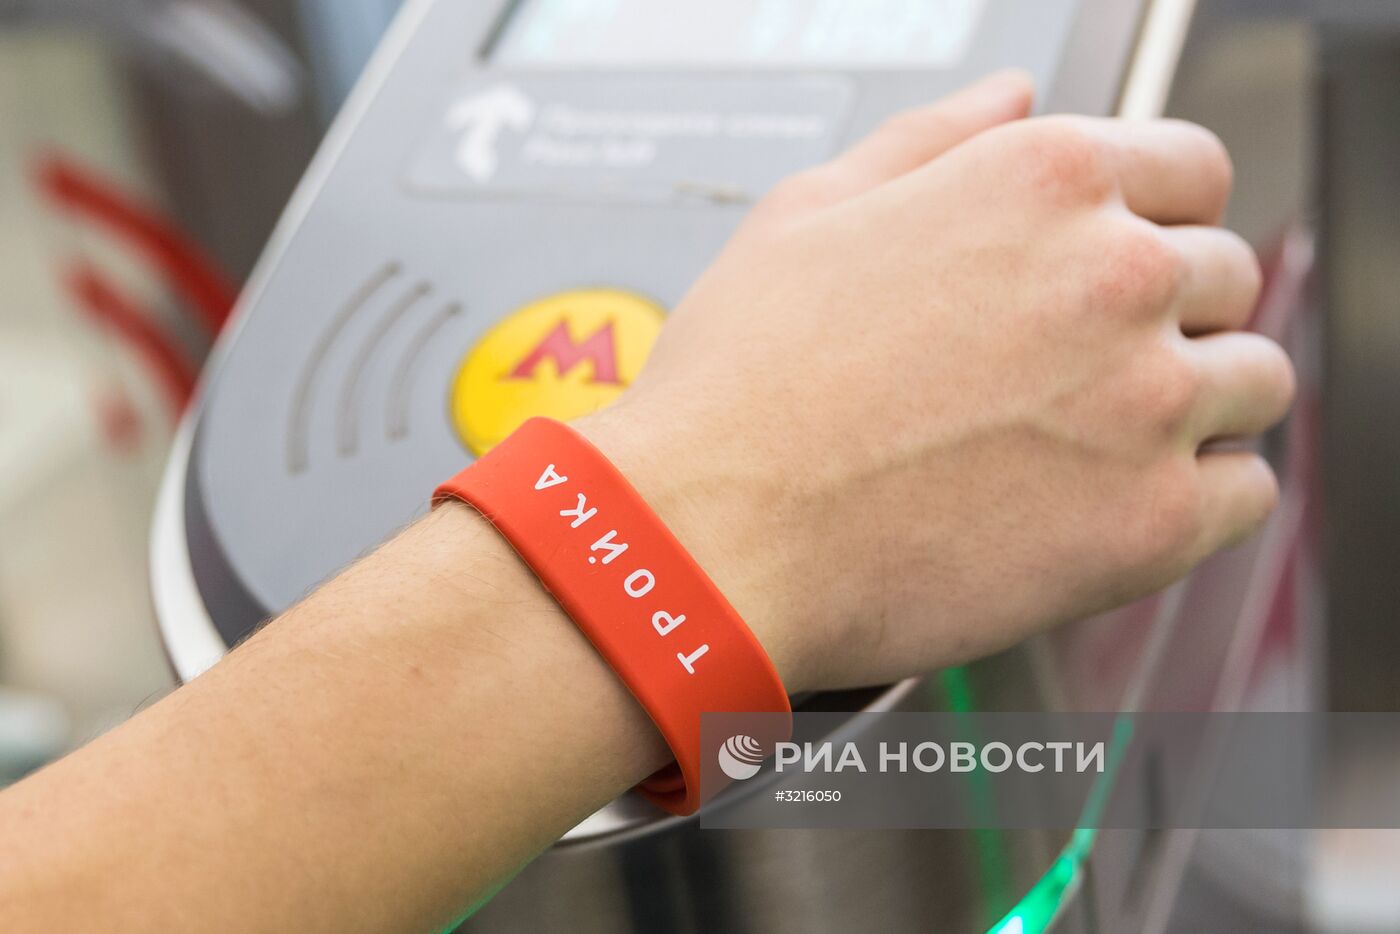 Браслеты "Тройка" начали продавать в московском метро